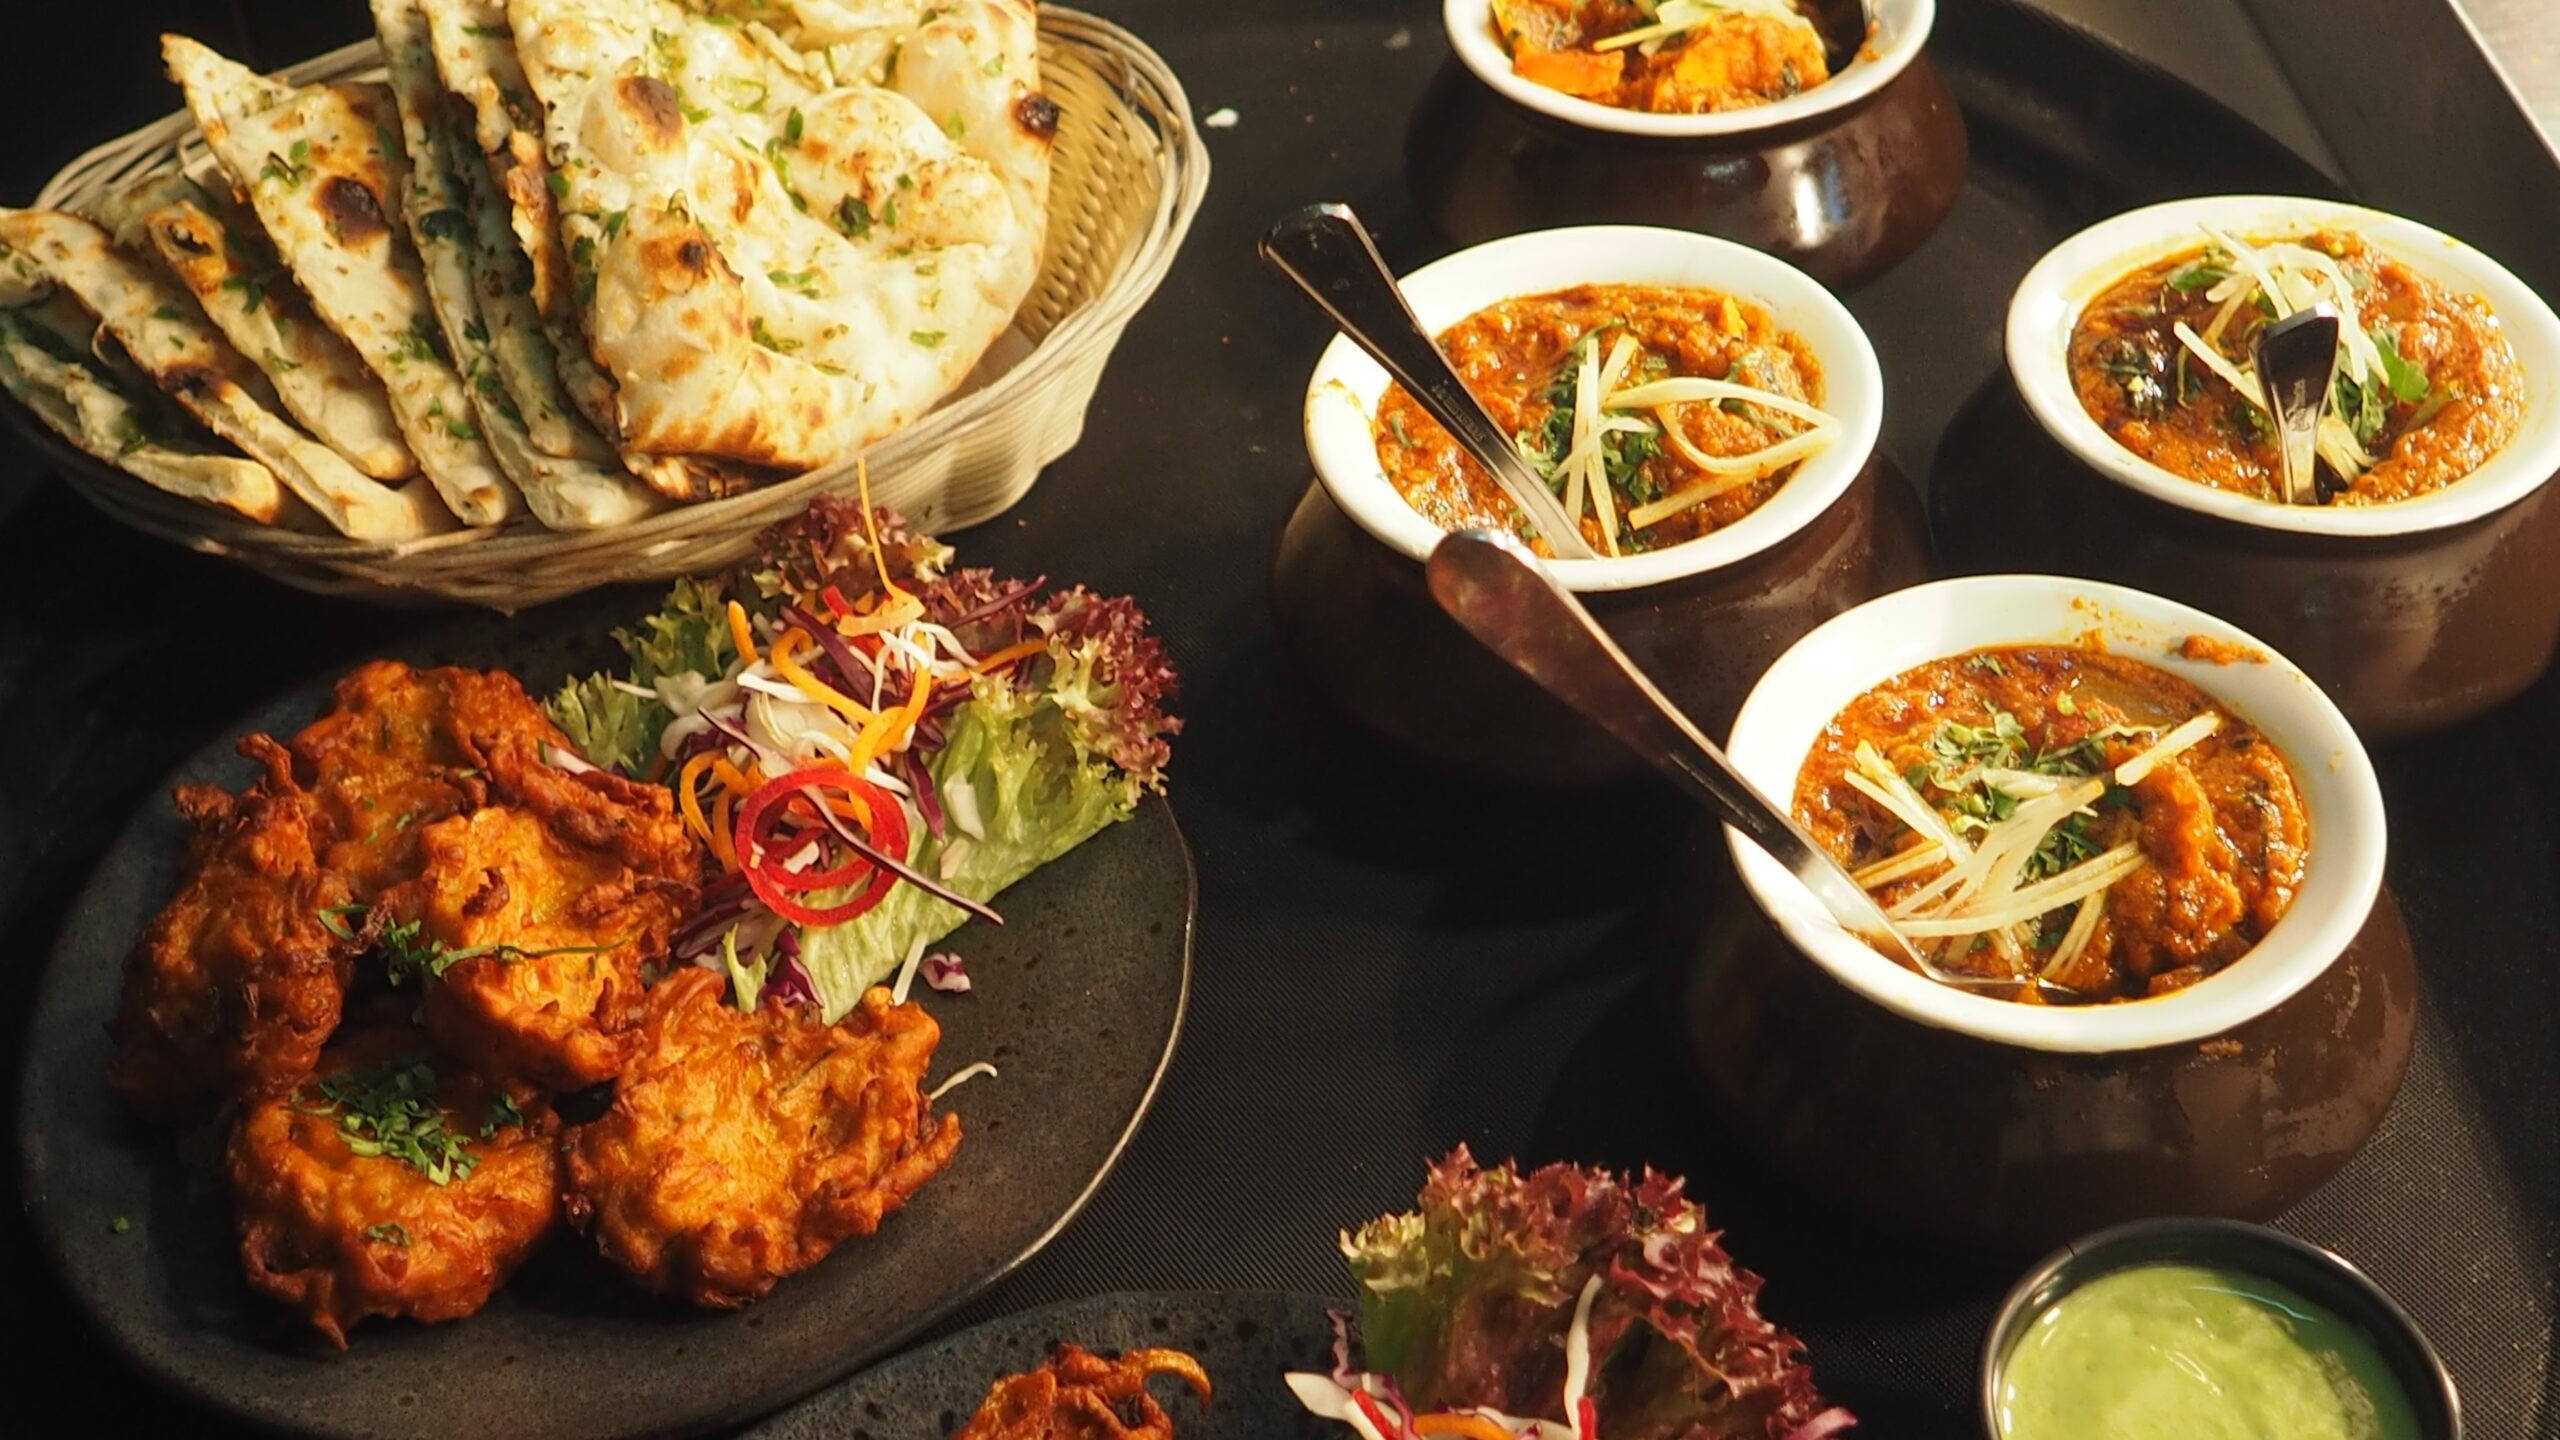 Taste of Kathmandu | Indian Restaurant & Takeaway in Hythe